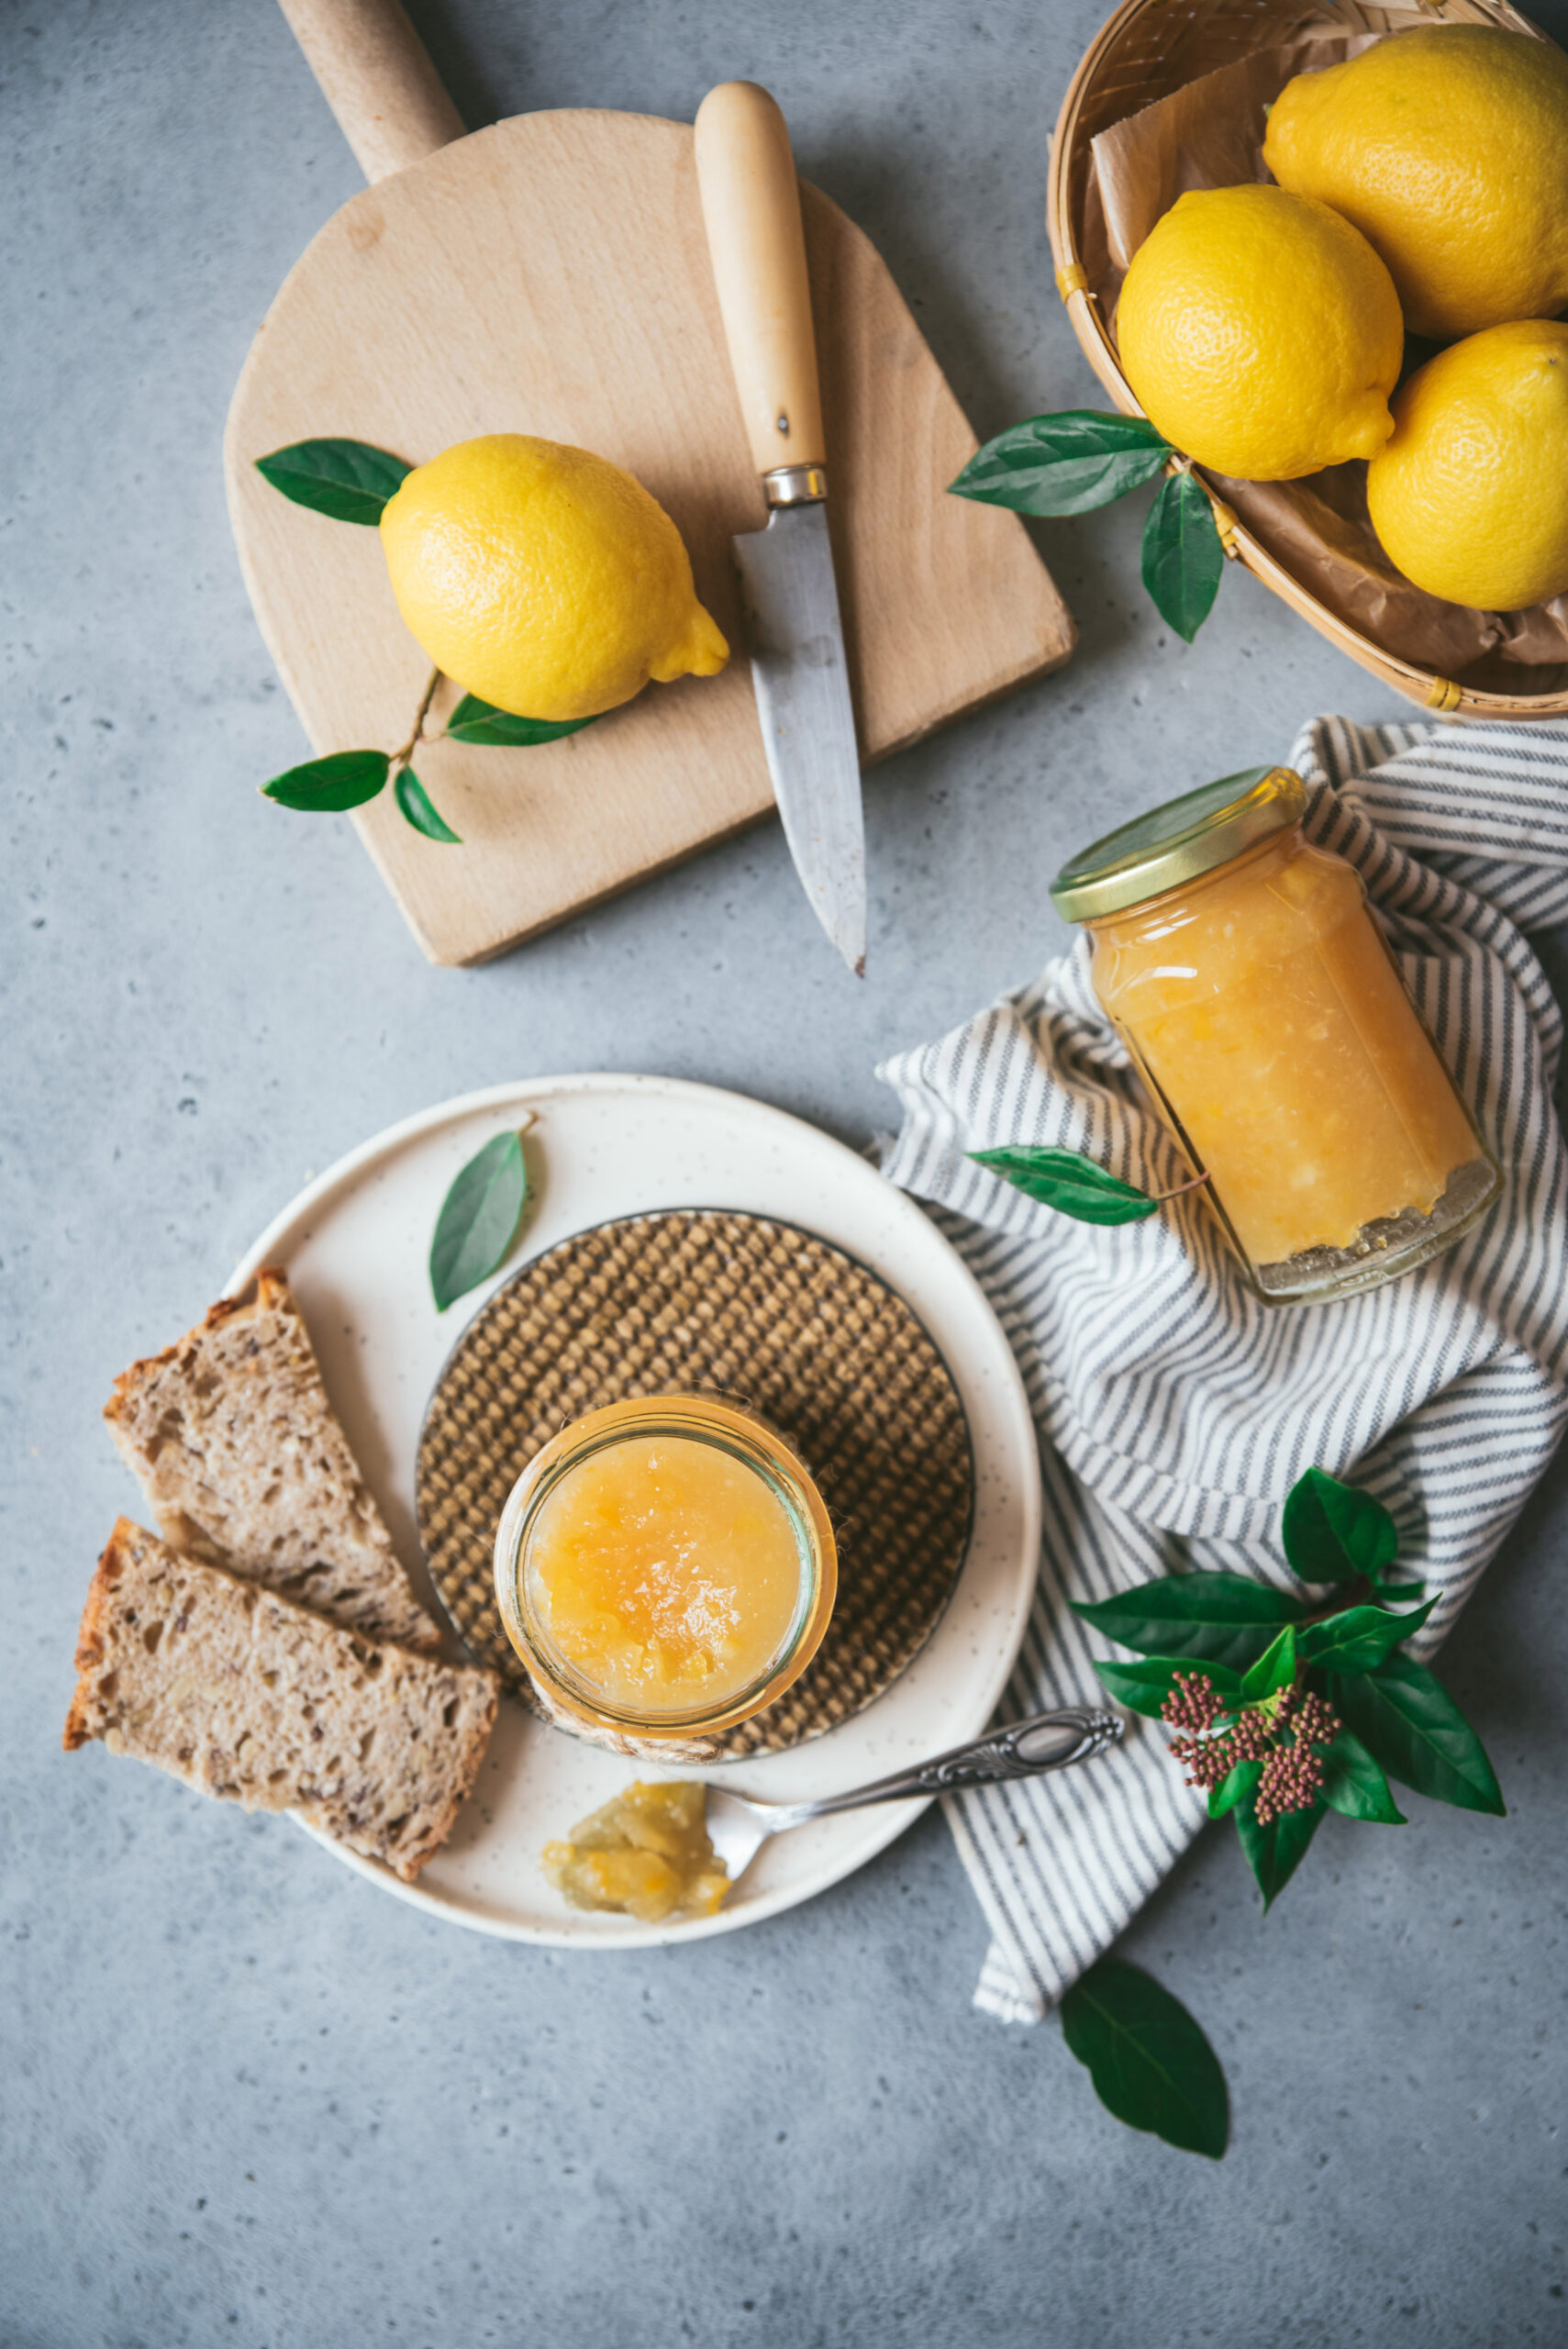 Confiture de citron bergamote recette maison